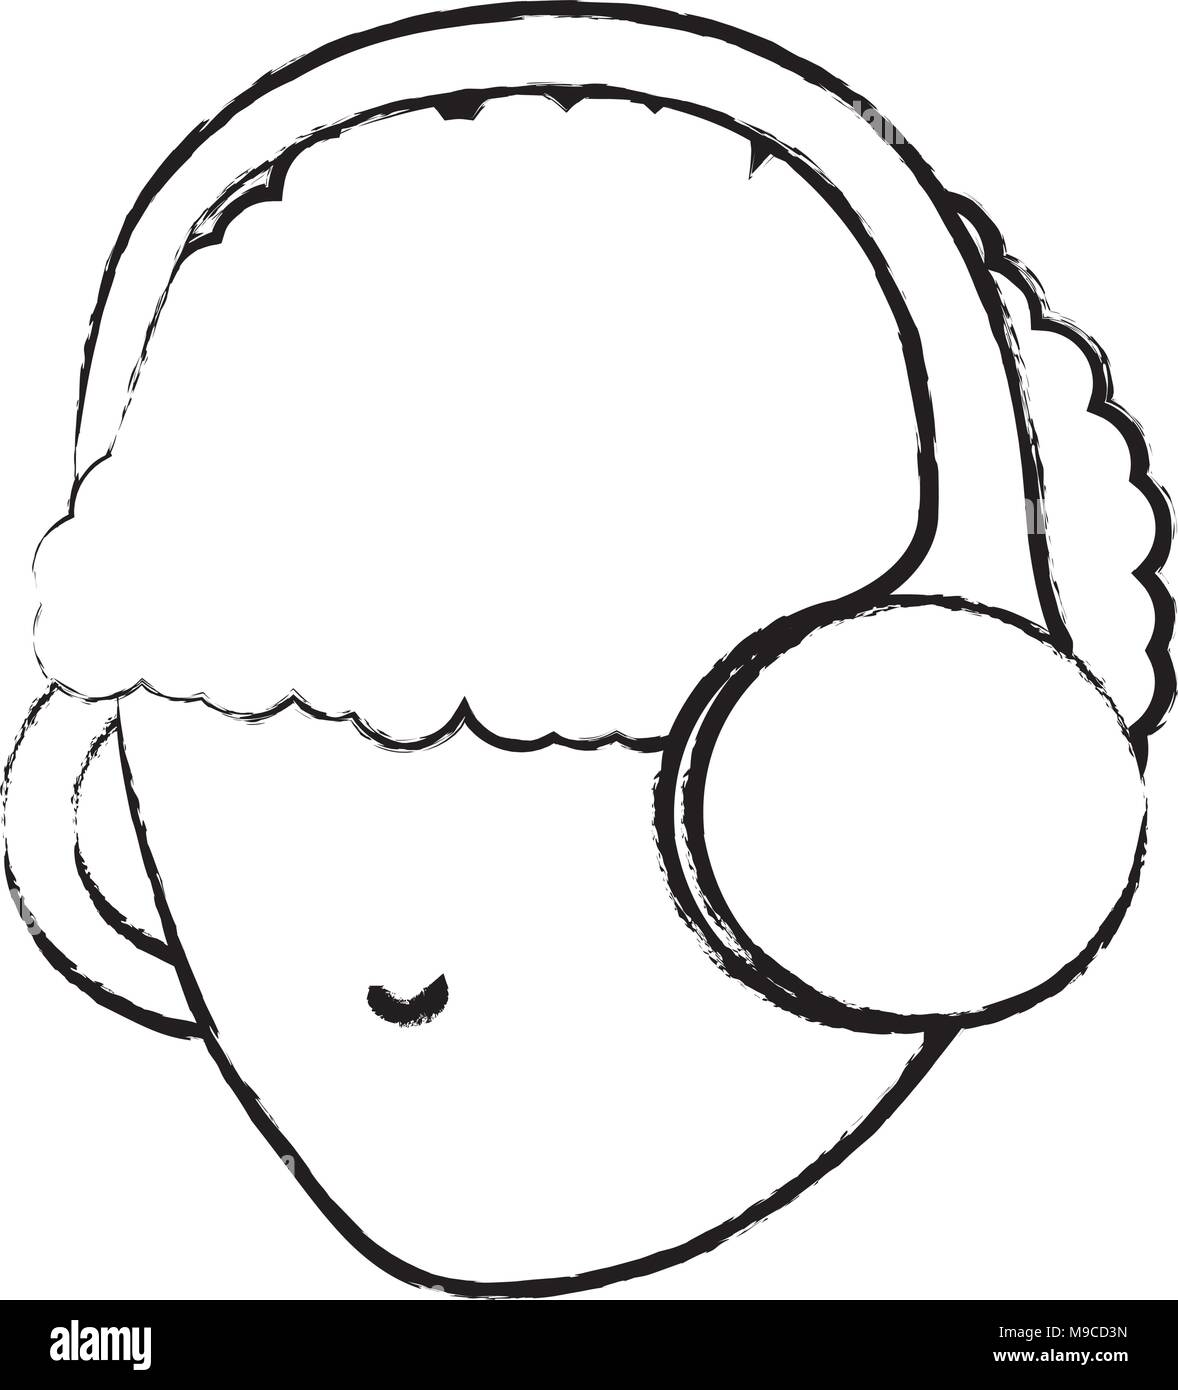 Skizze des Avatars mann Kopf mit einem Kopfhörer auf weißem Hintergrund,  Vector Illustration Stock-Vektorgrafik - Alamy